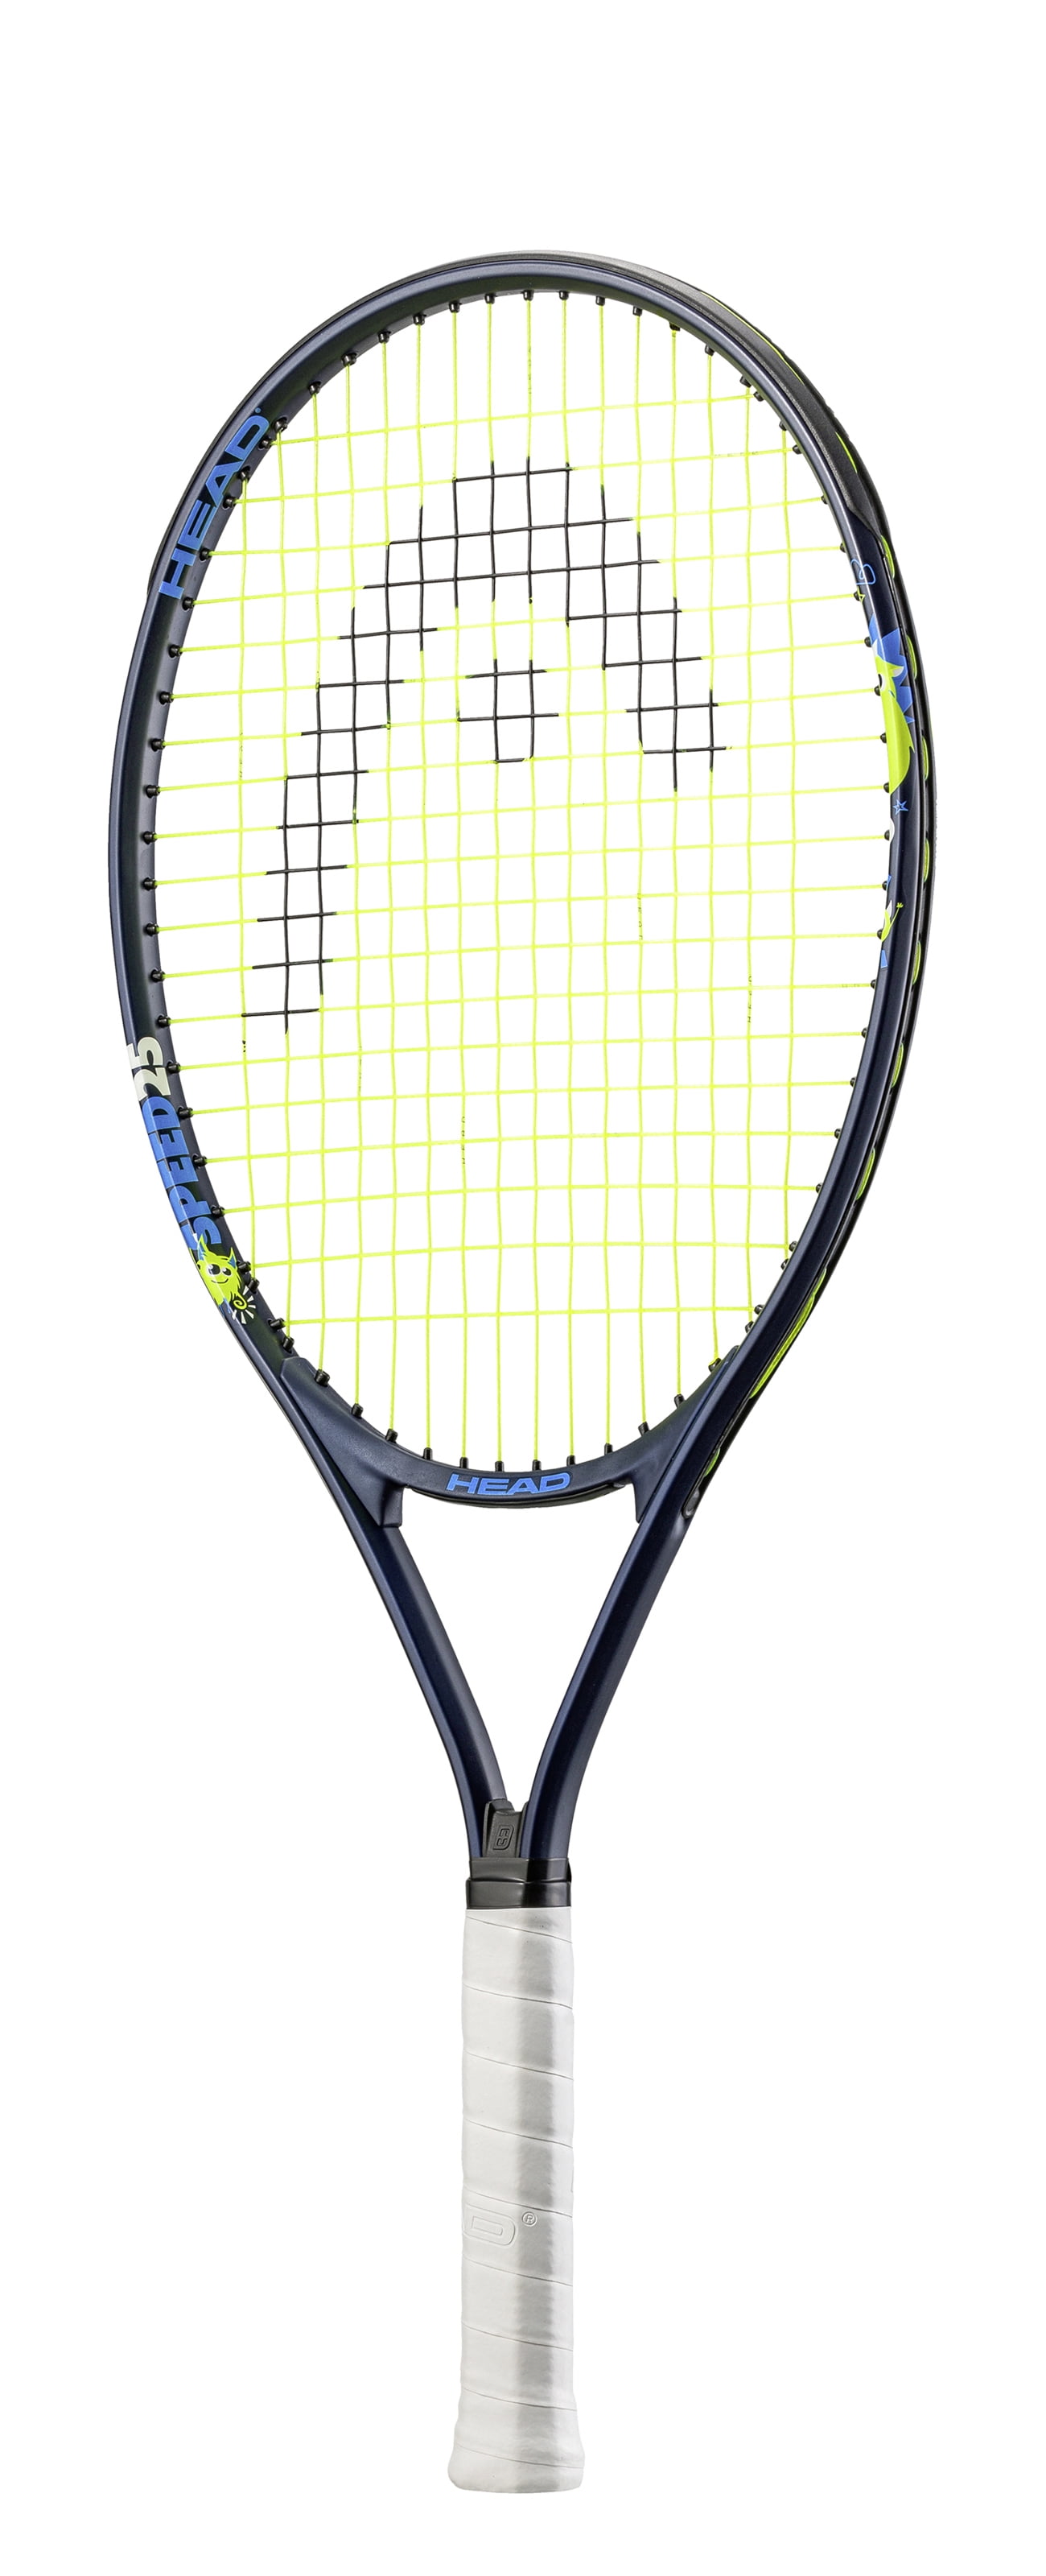 V7 Tennis Racquet Racket TNS Frame Unisex Wilson Blade 98 16x19 Grip 4 3/8" 